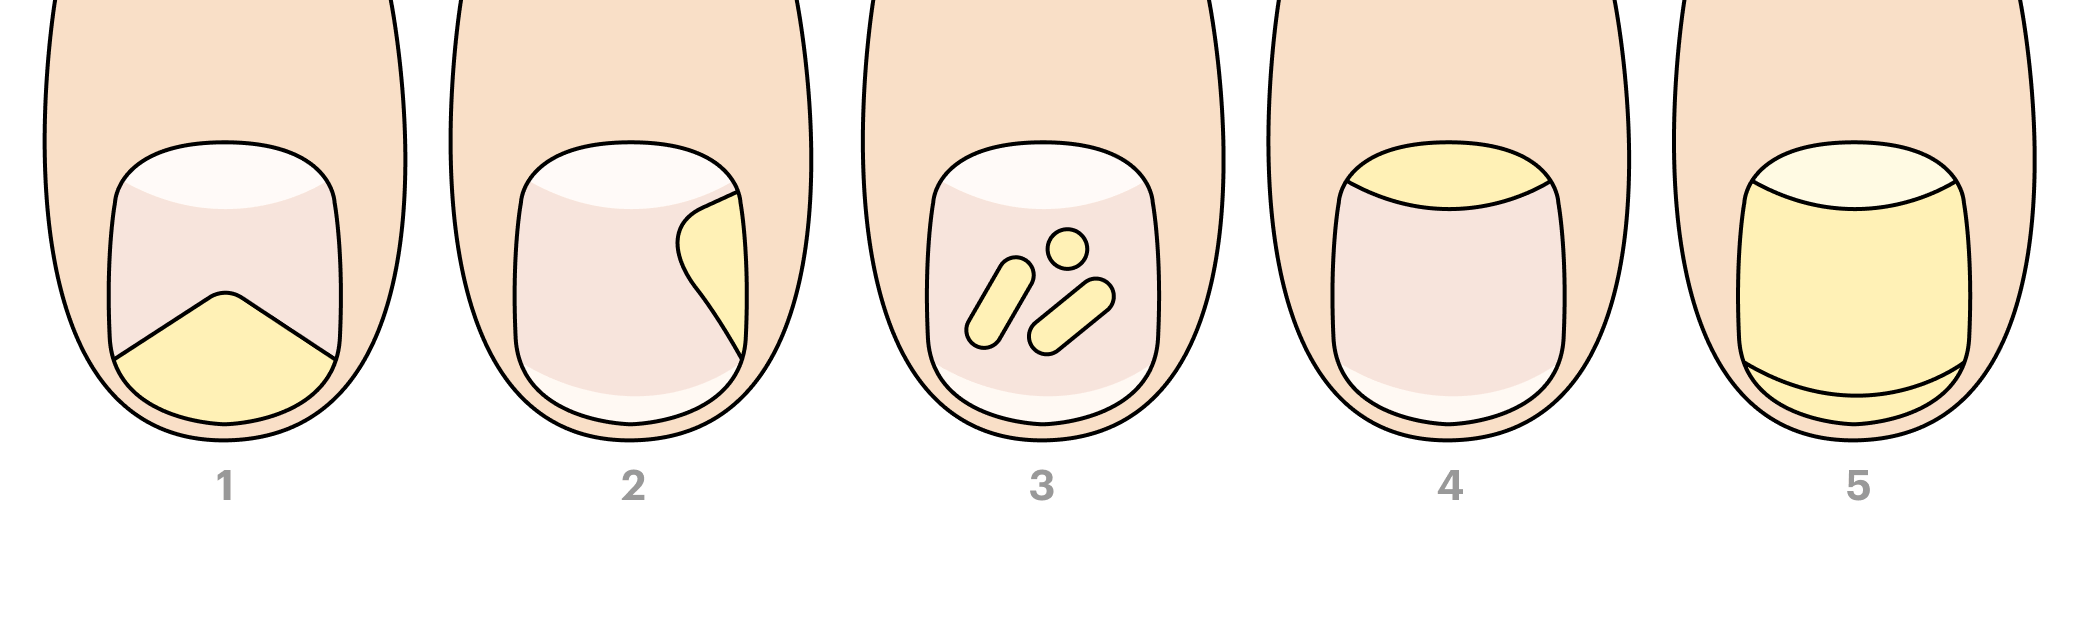 Разные виды грибка ногтей. 1 — дистальный онихомикоз, 2 — латеральный, 3 — белый поверхностный, 4 — проксимальный, 5 — общий дистрофический